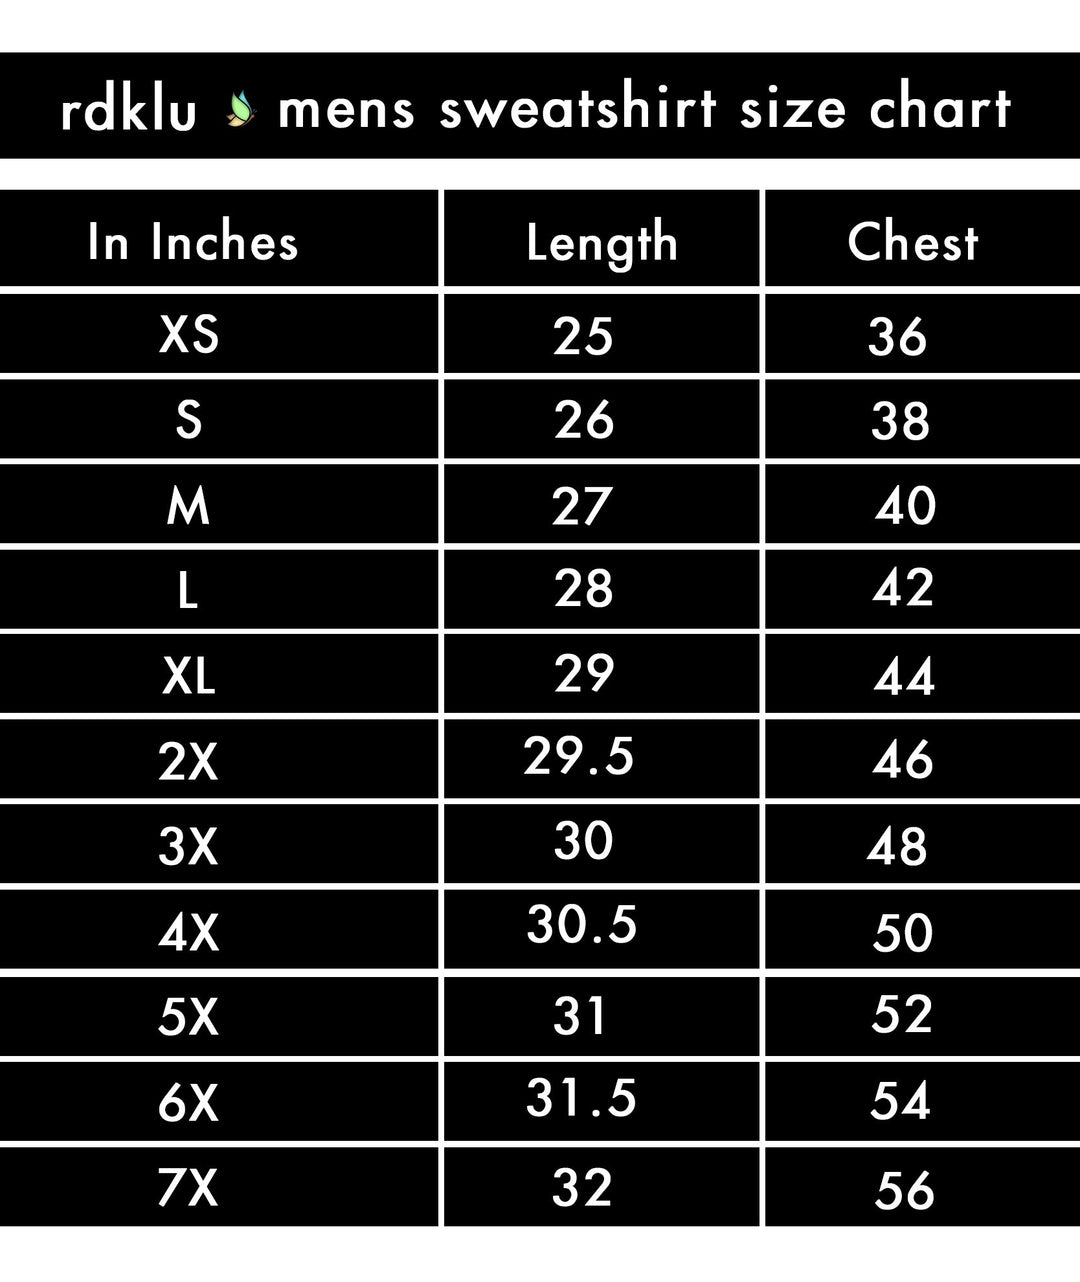 RDKLU MENS SWEATSHIRT - Vert Invert - RDKL - Men's Sweatshirt#2